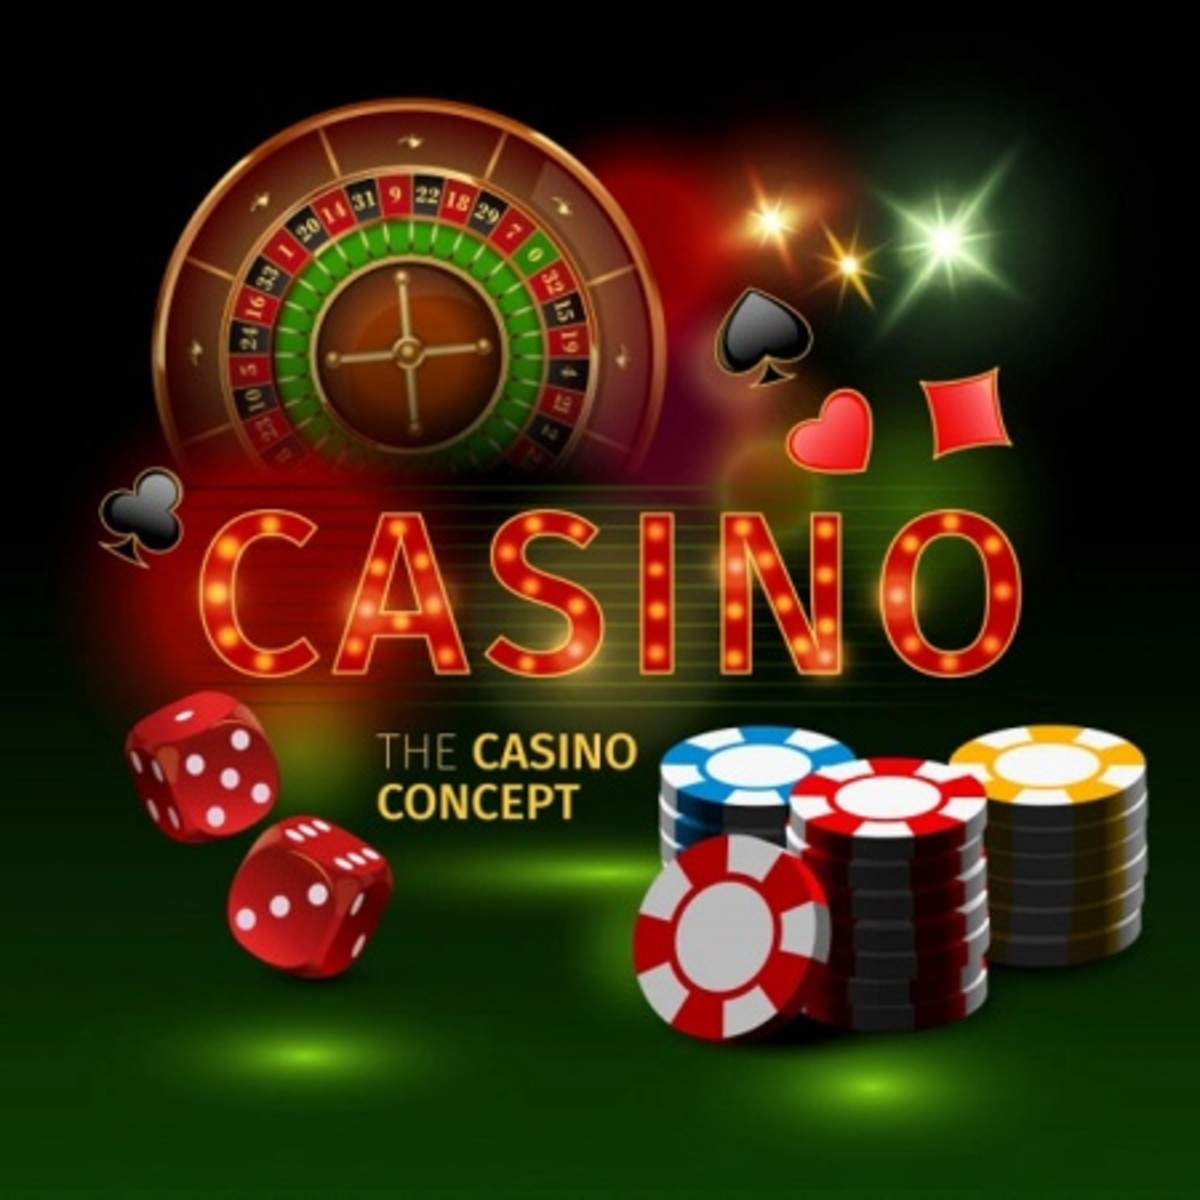 5 stars casino